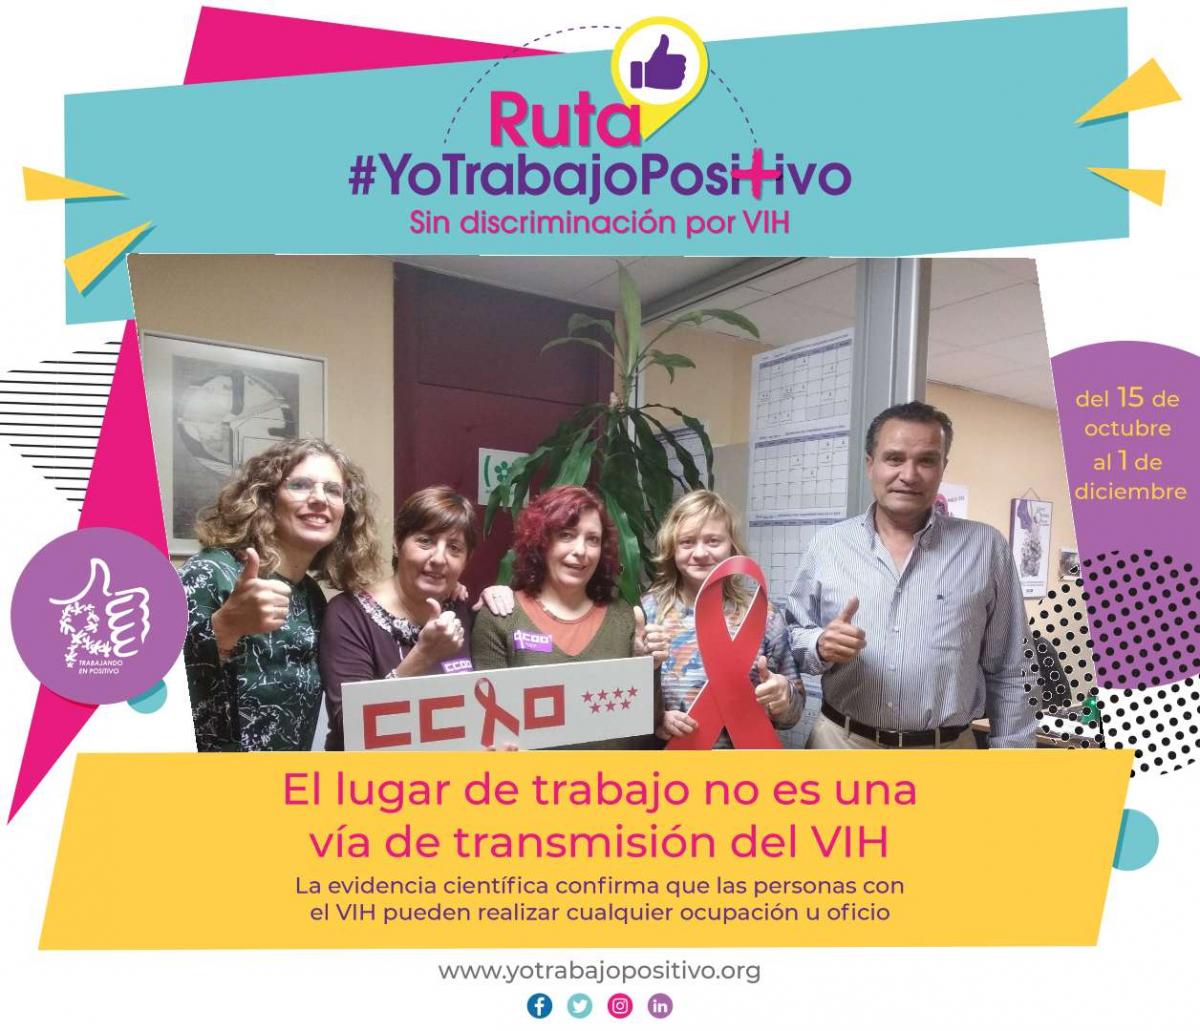 #YoTrabajoEnPositivo sin discriminación por VIH